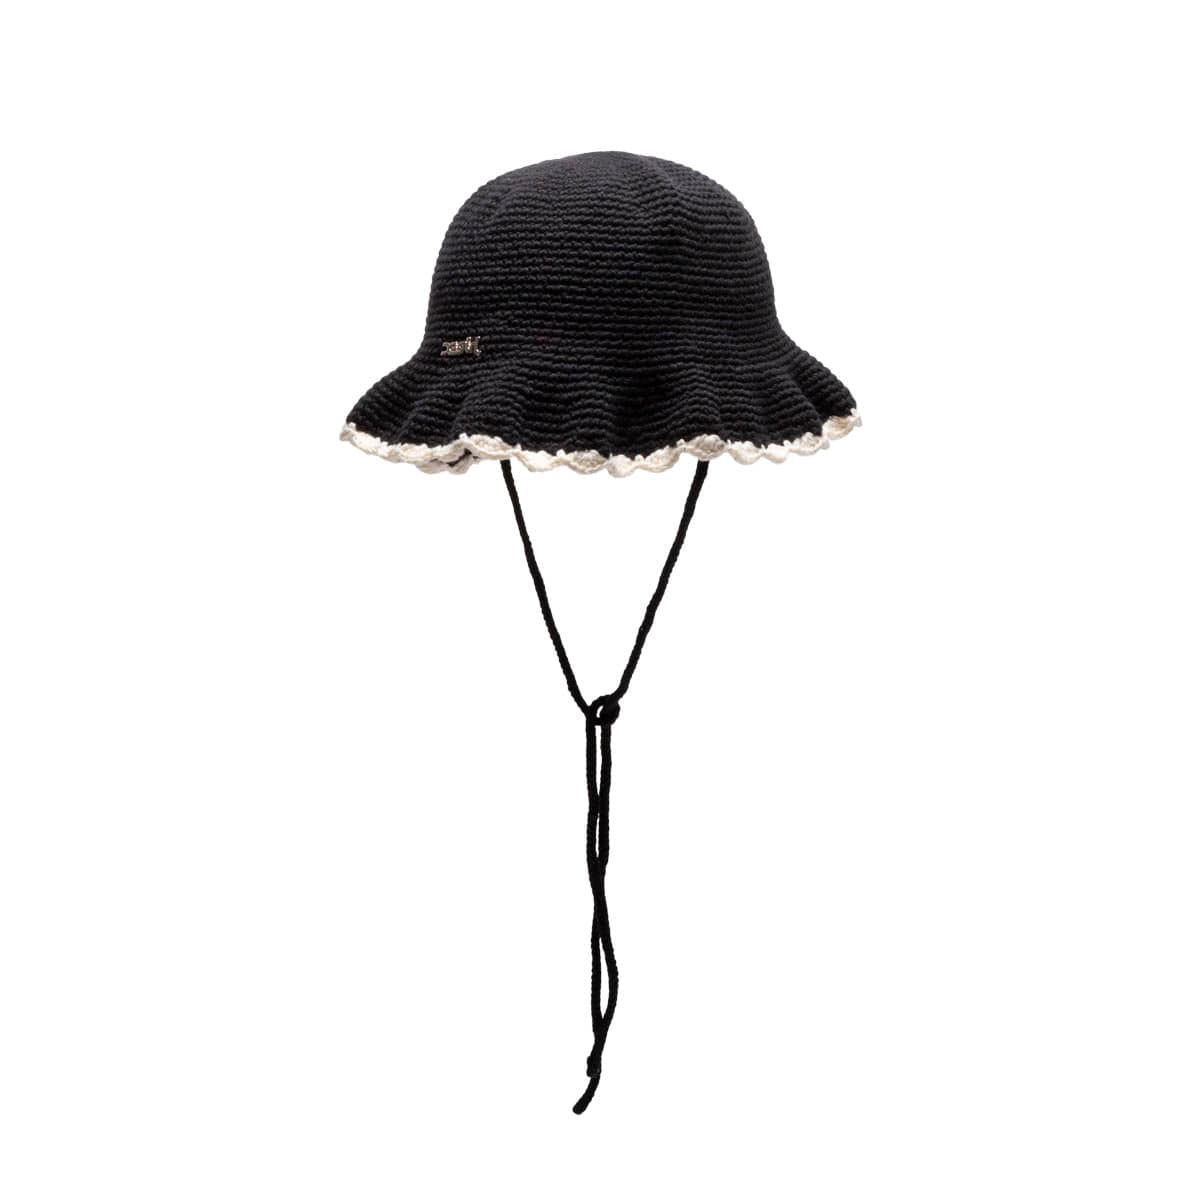 Camp High Knit Bucket Hat - Black Hats, Accessories - WCHAI20009